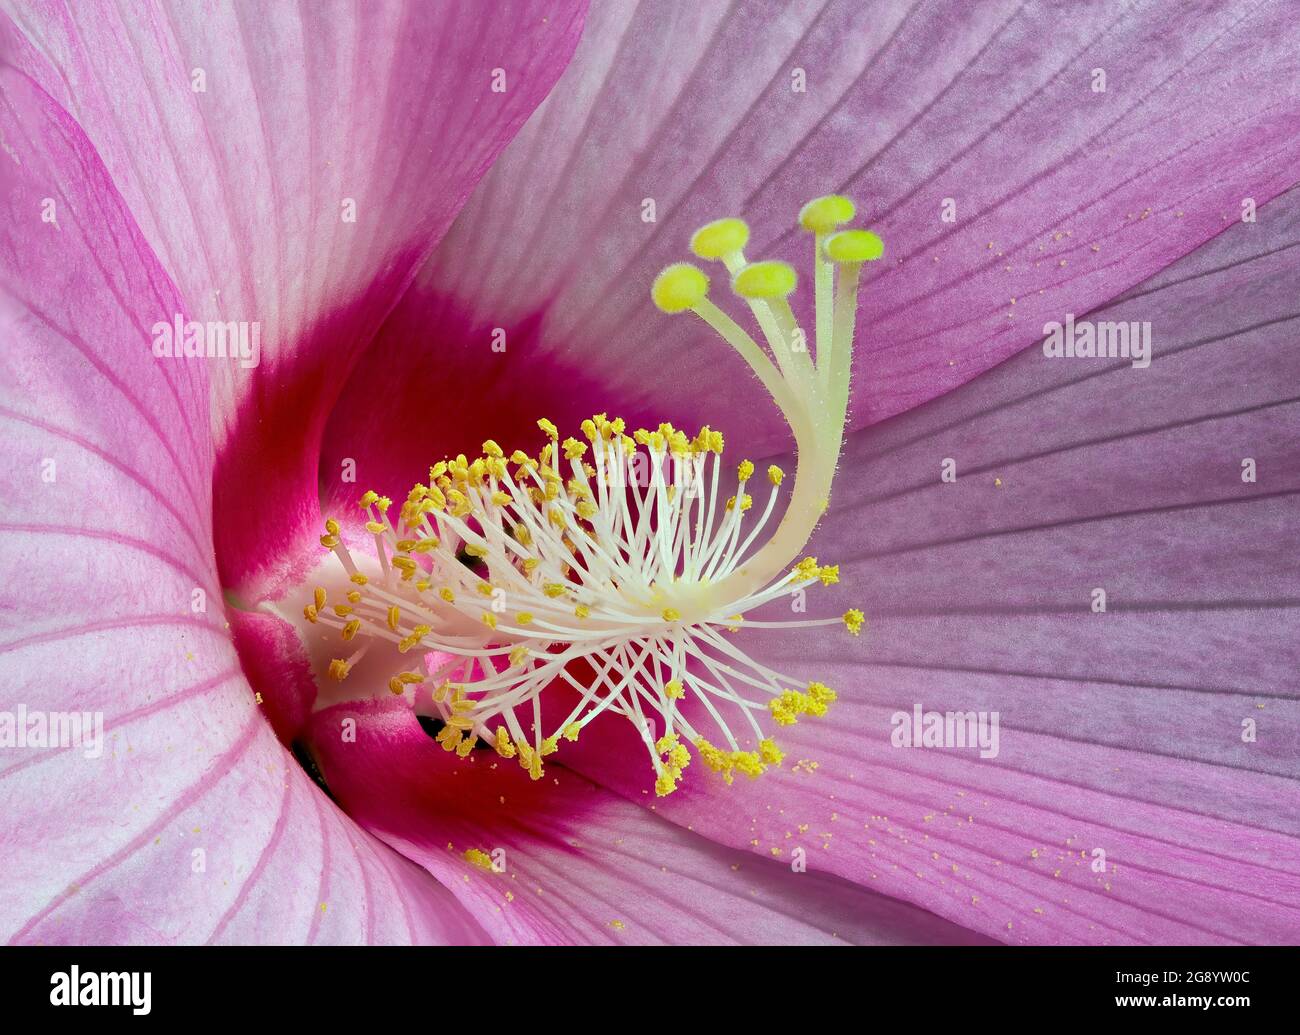 Vue macro du centre de la fleur d'hibicus montrant plusieurs étamines et anthères avec des grains de pollen et cinq branches de pistil witl stigmas flous. Banque D'Images